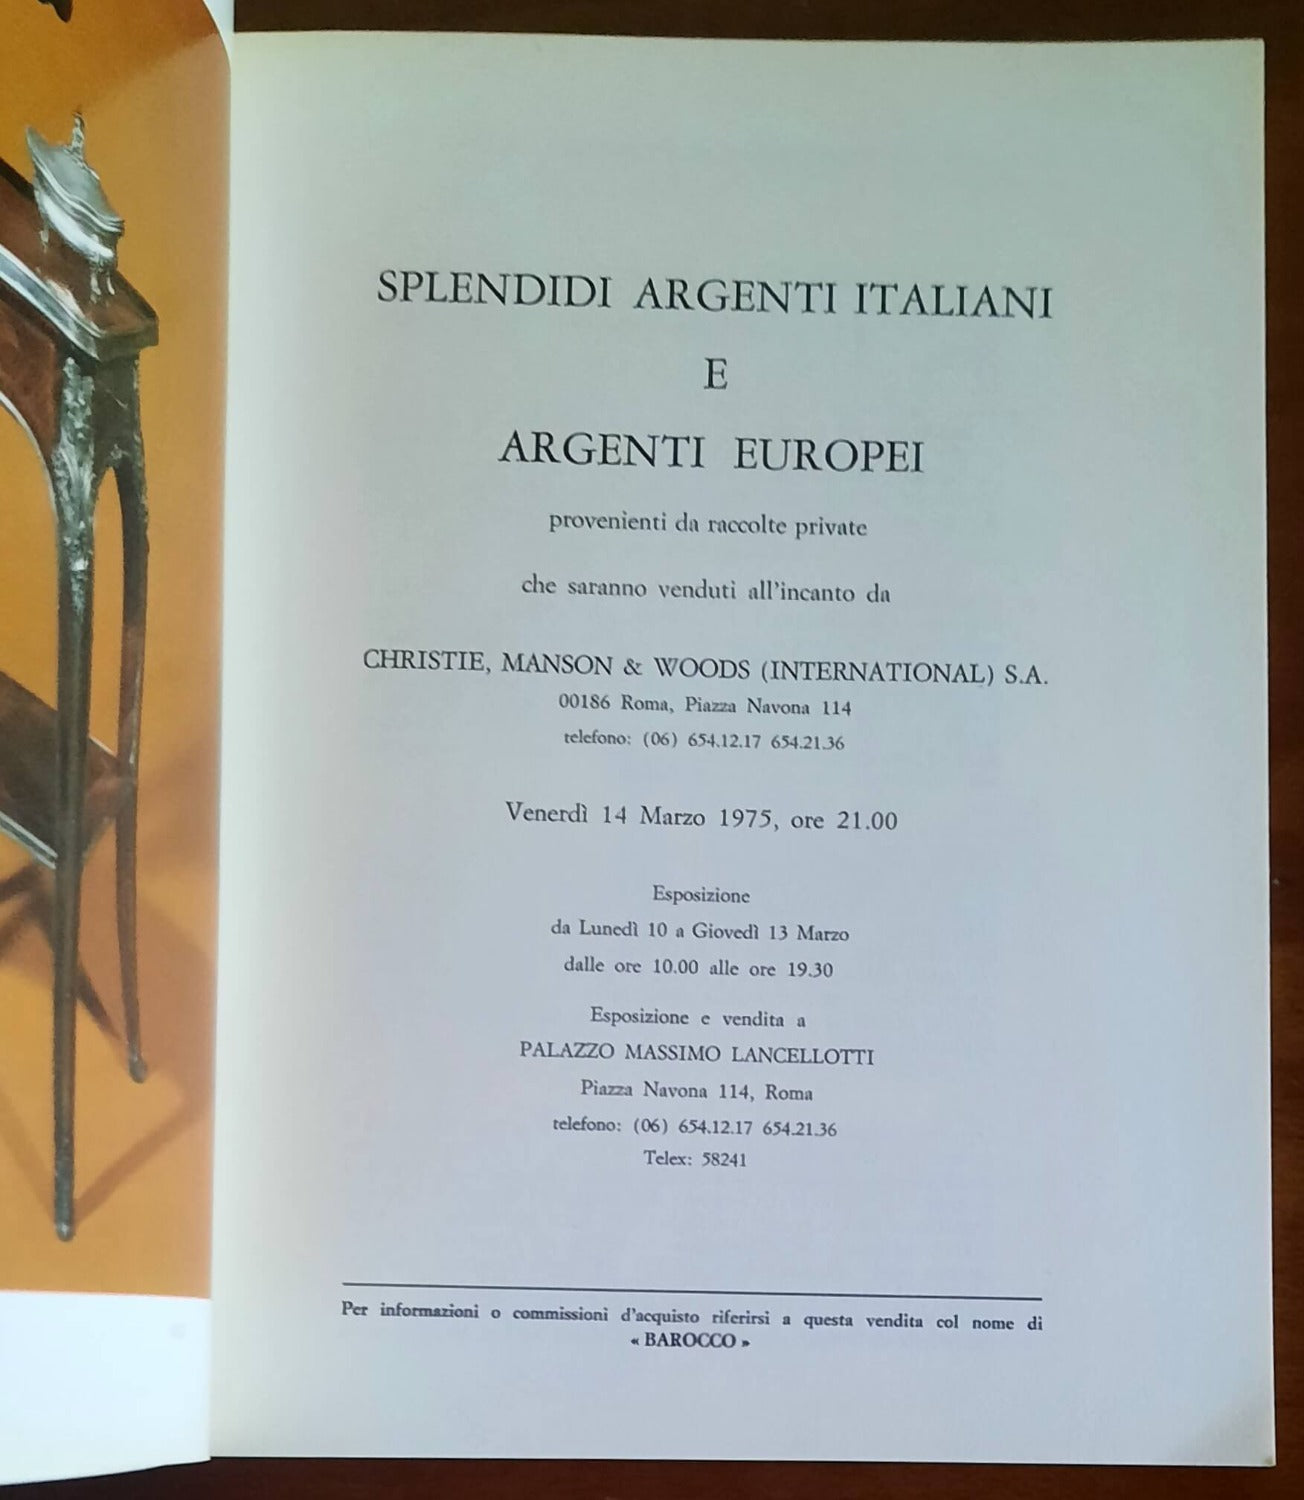 Splendidi argenti italiani e argenti europei - Casa Editrice Edam - Firenze